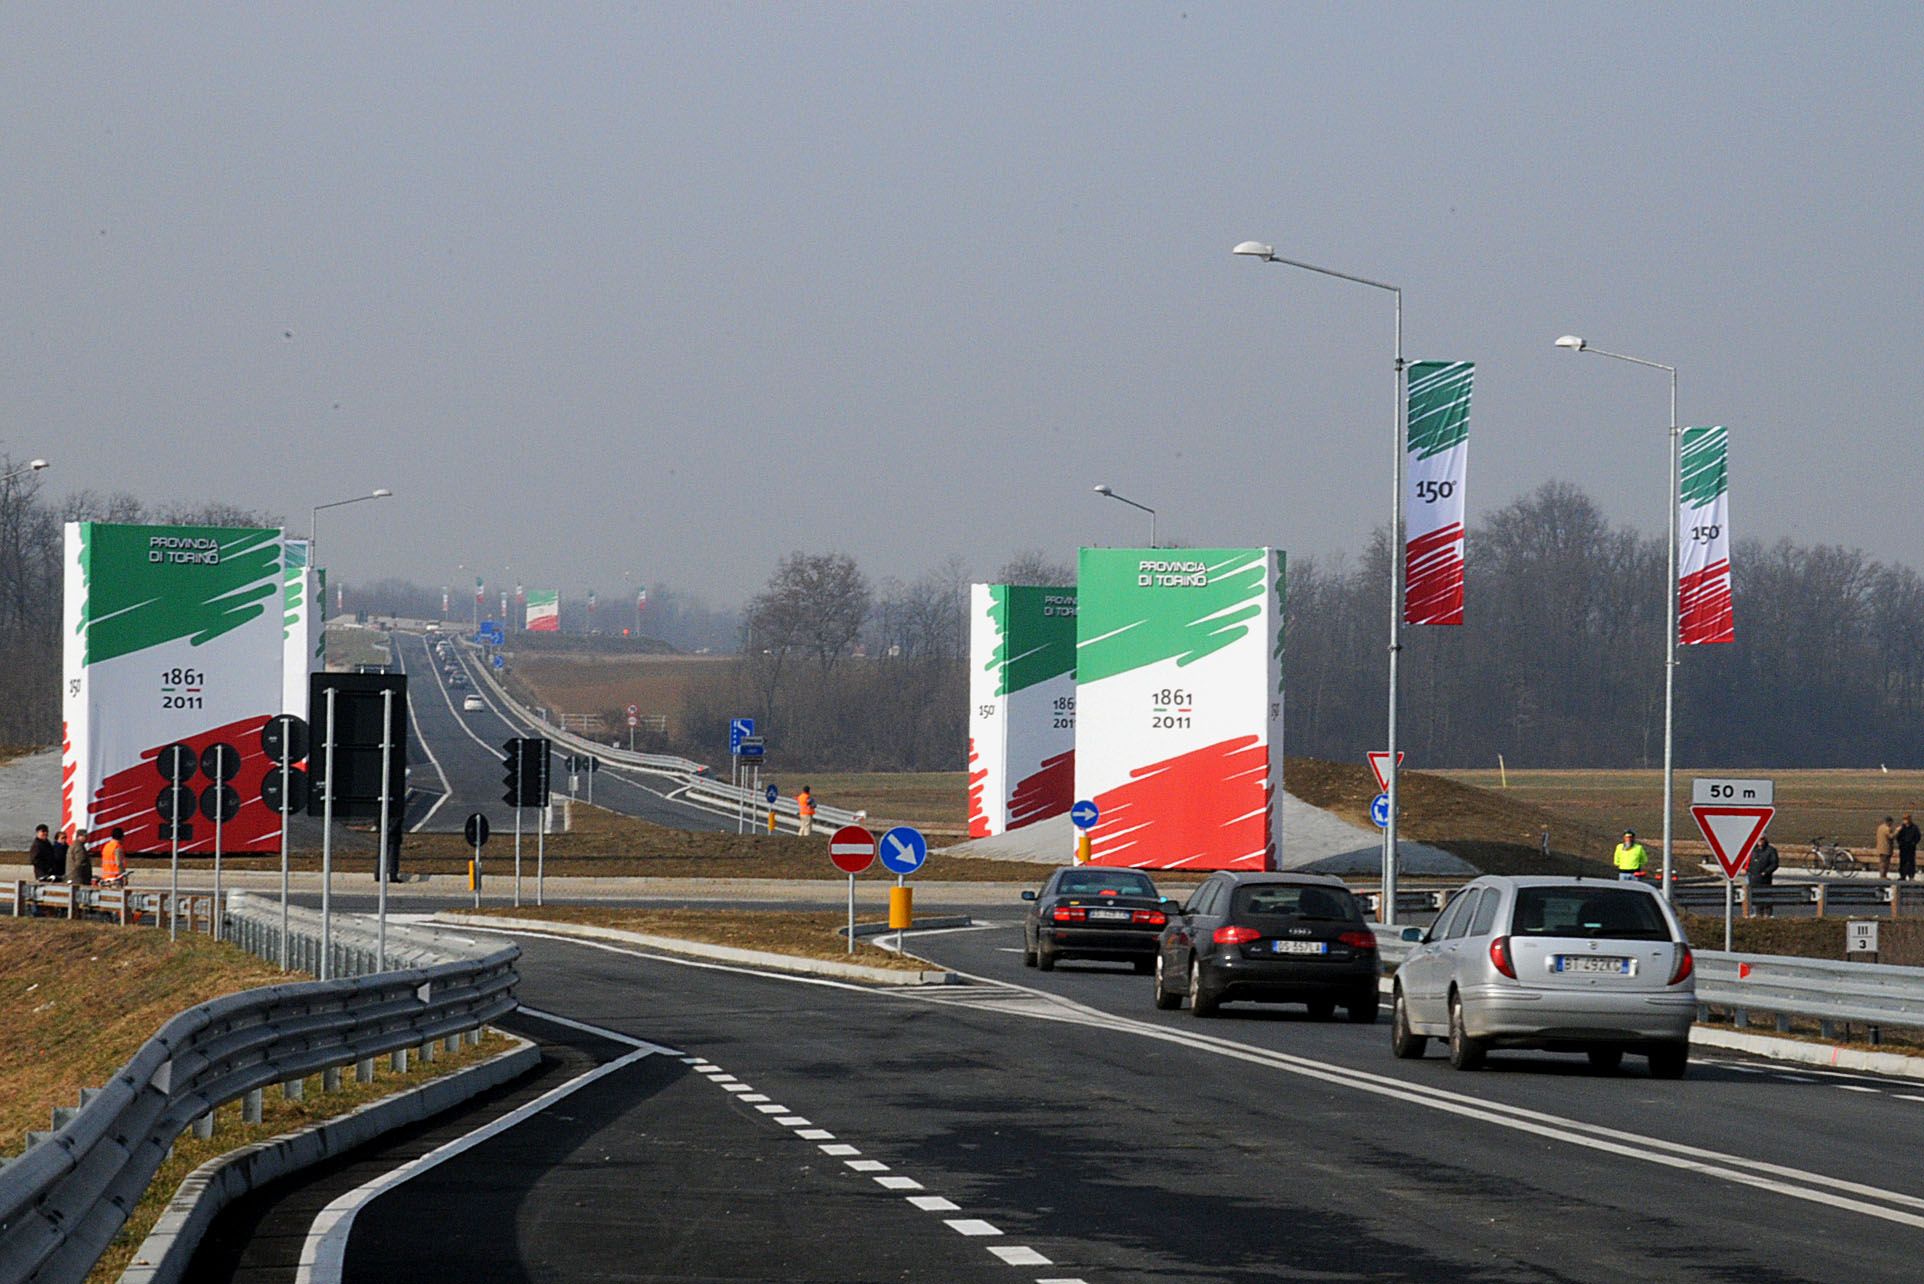 La provincia di Torino celebra i 150 anni dell’unità d’Italia con l’inaugurazione di nuove infrastrutture